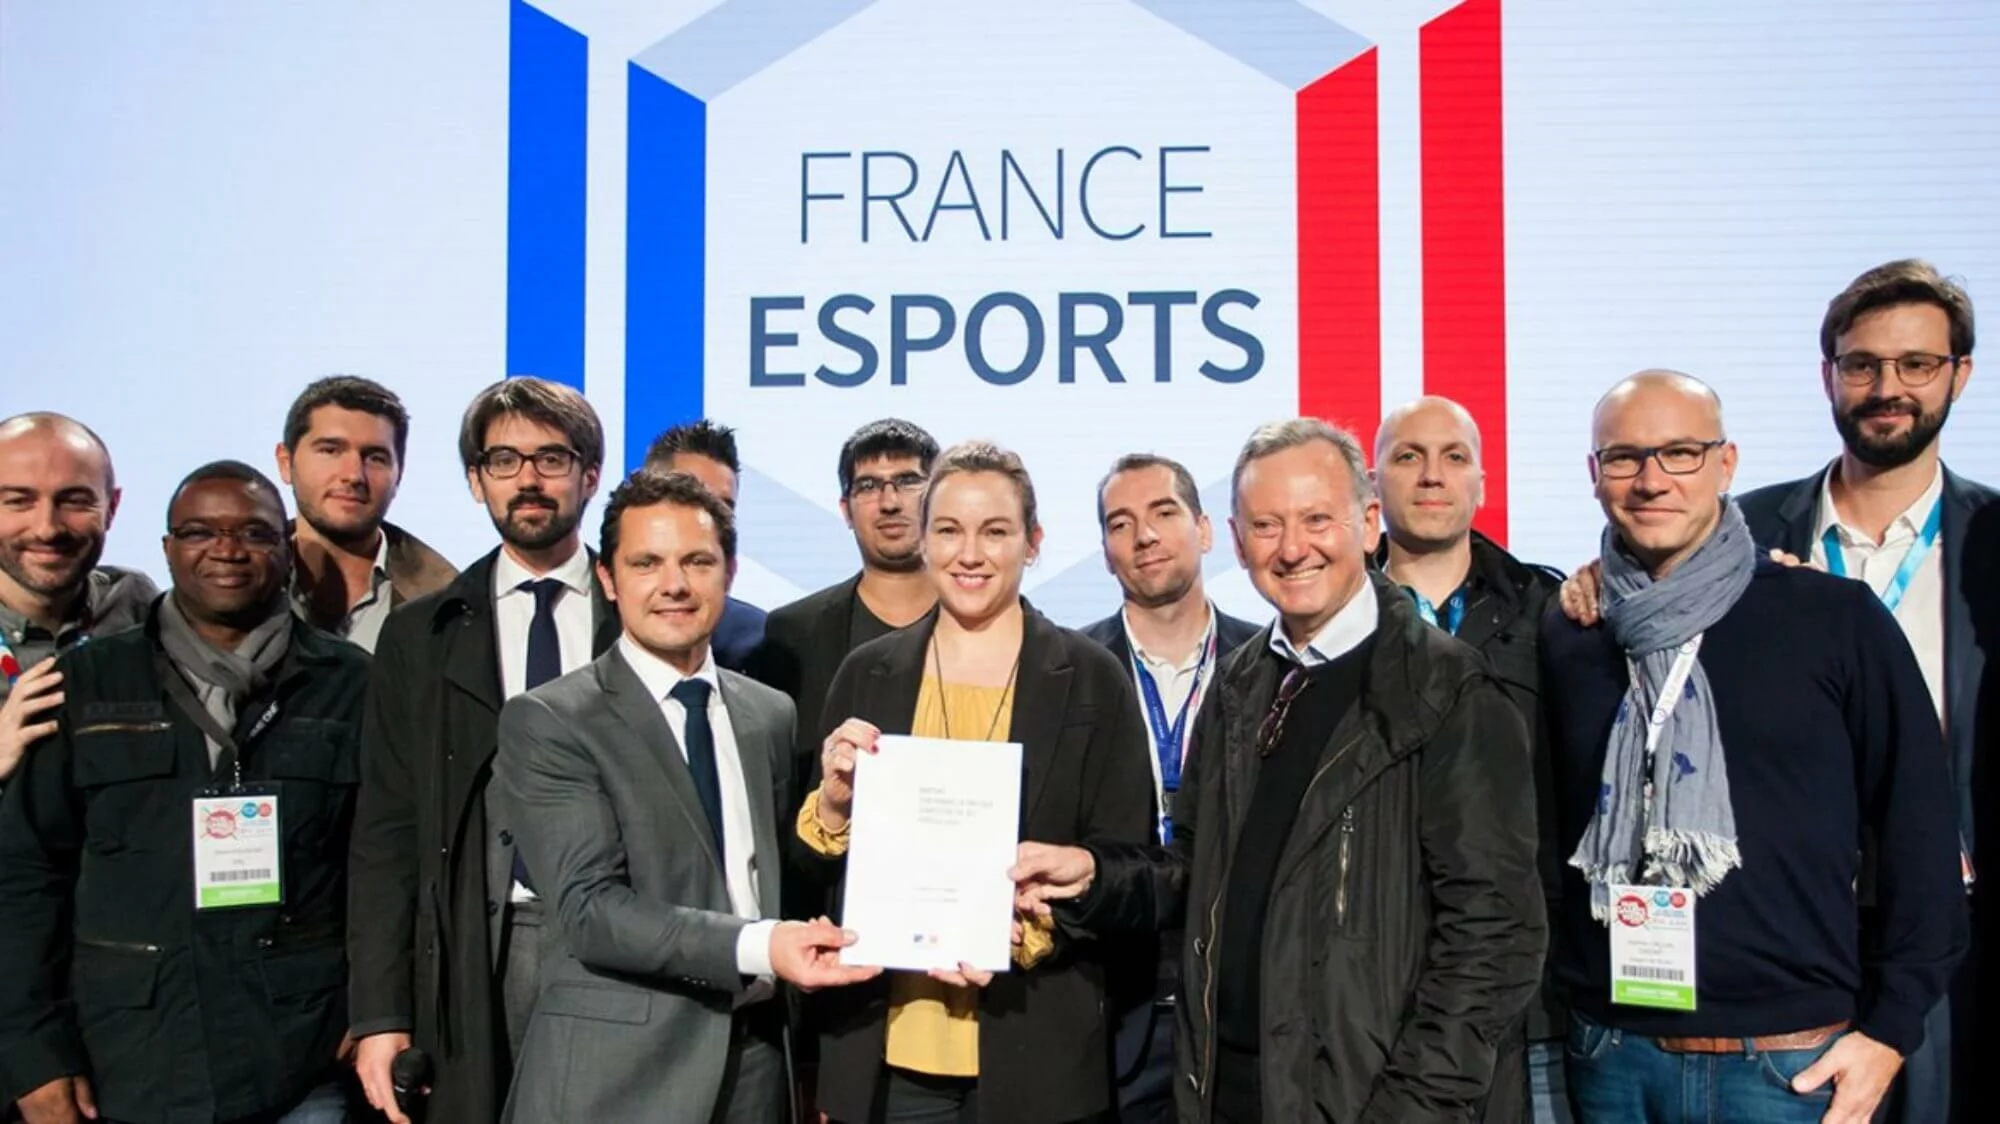 Evento de fundação da France Esports junto a parte de sua equipe inaugural | Fonte: france-esports.org